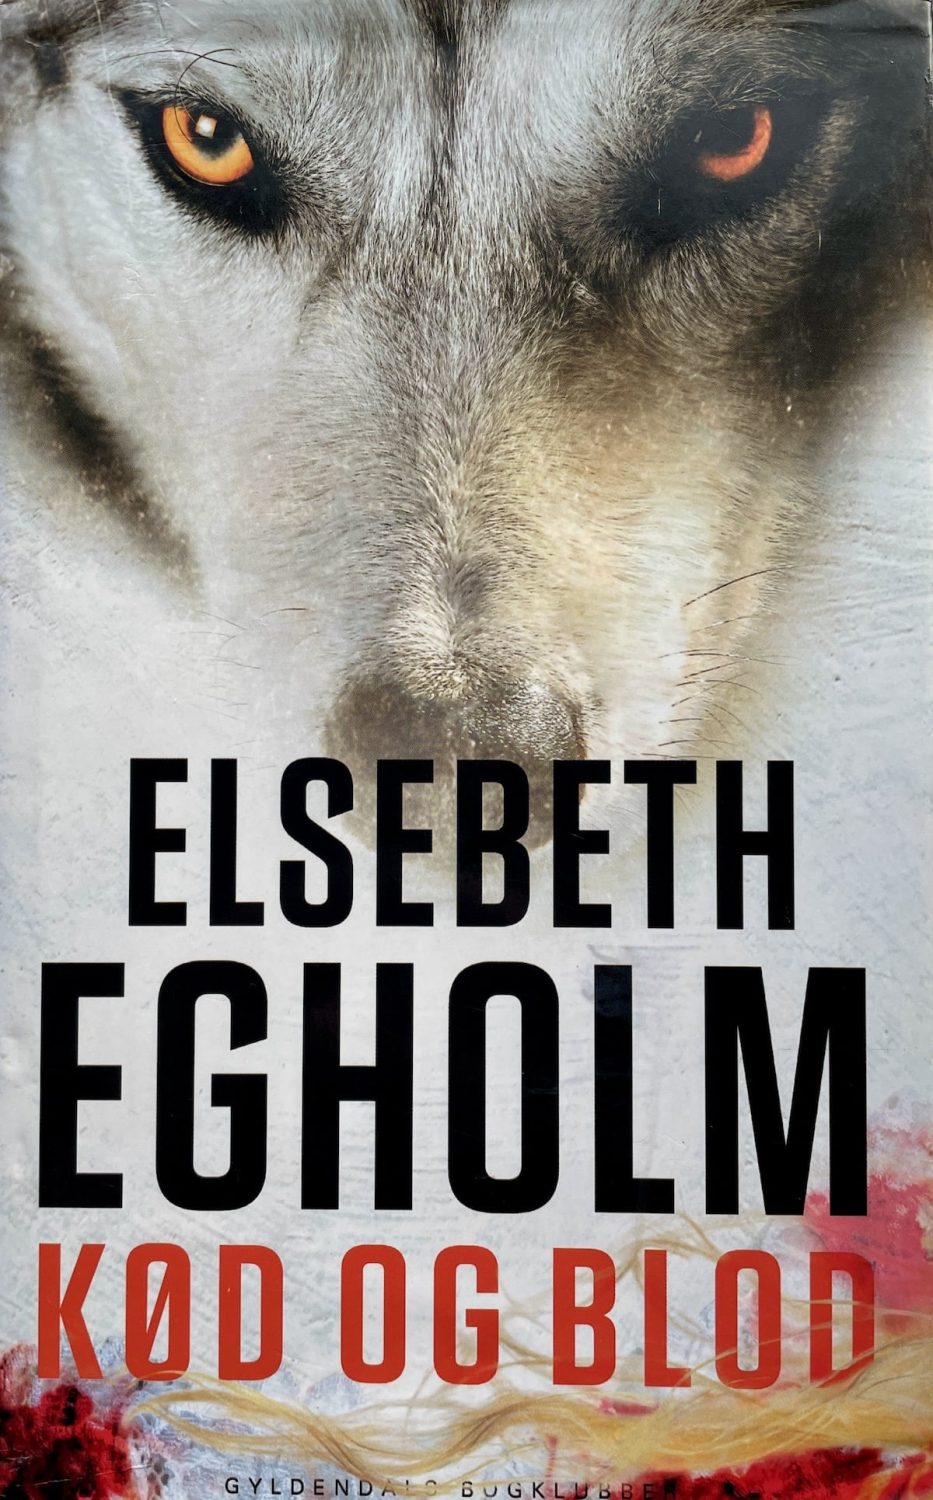 Kød og blod, Elsebeth Egholm, brugt bog